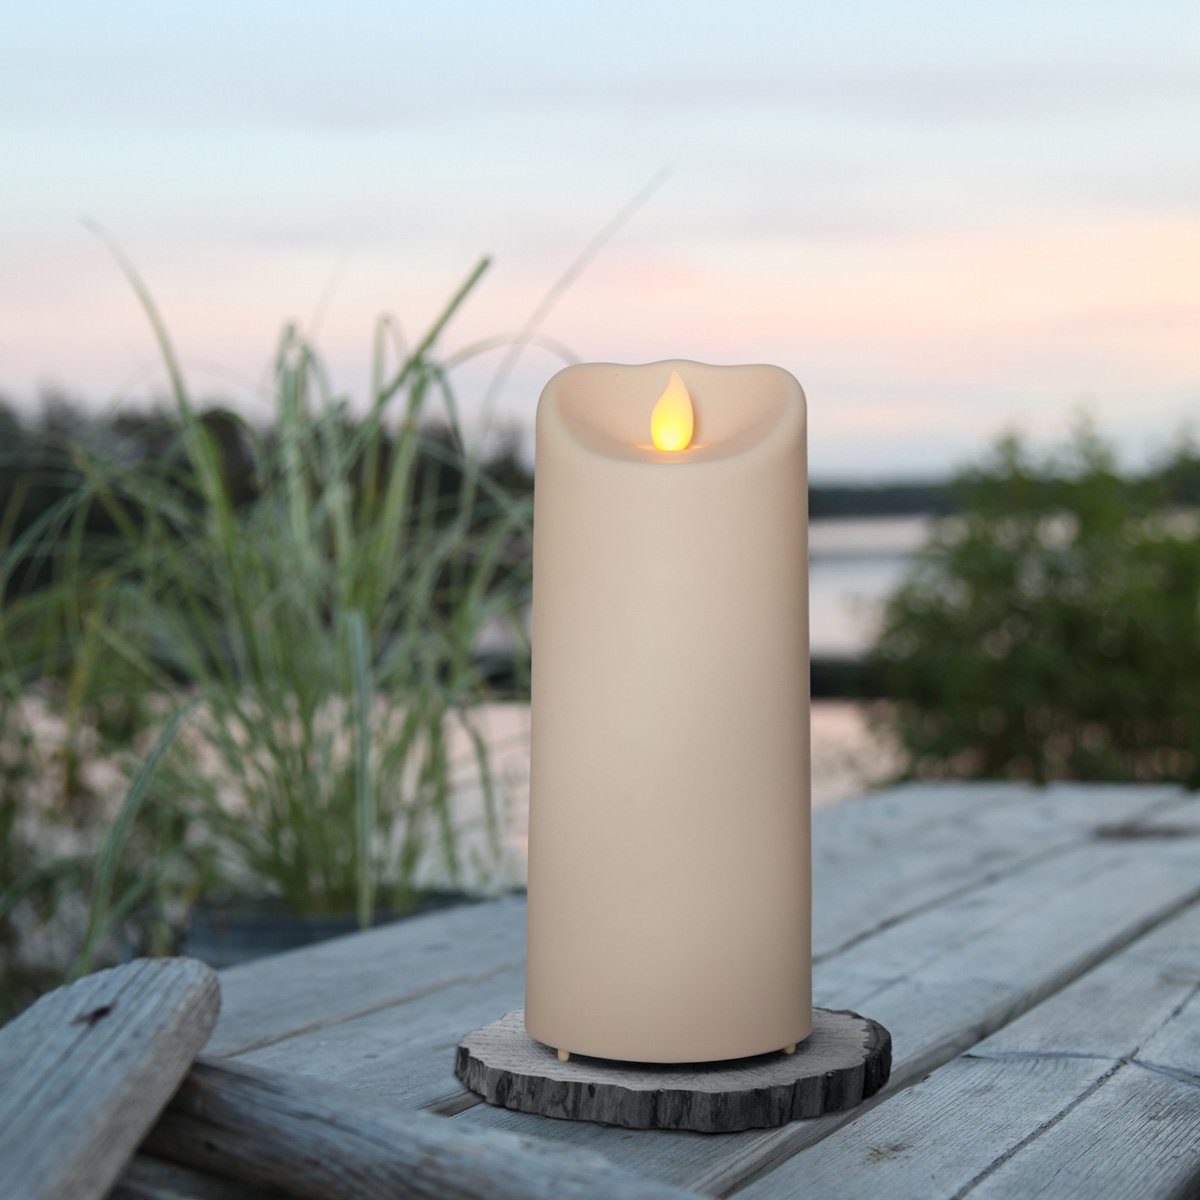 STAR TRADING LED-Kerze »LED Kerze mit bewegter Flamme outdoor Kunststoff -  H: 17,5cm D: 7,5cm - Timer - creme« online kaufen | OTTO